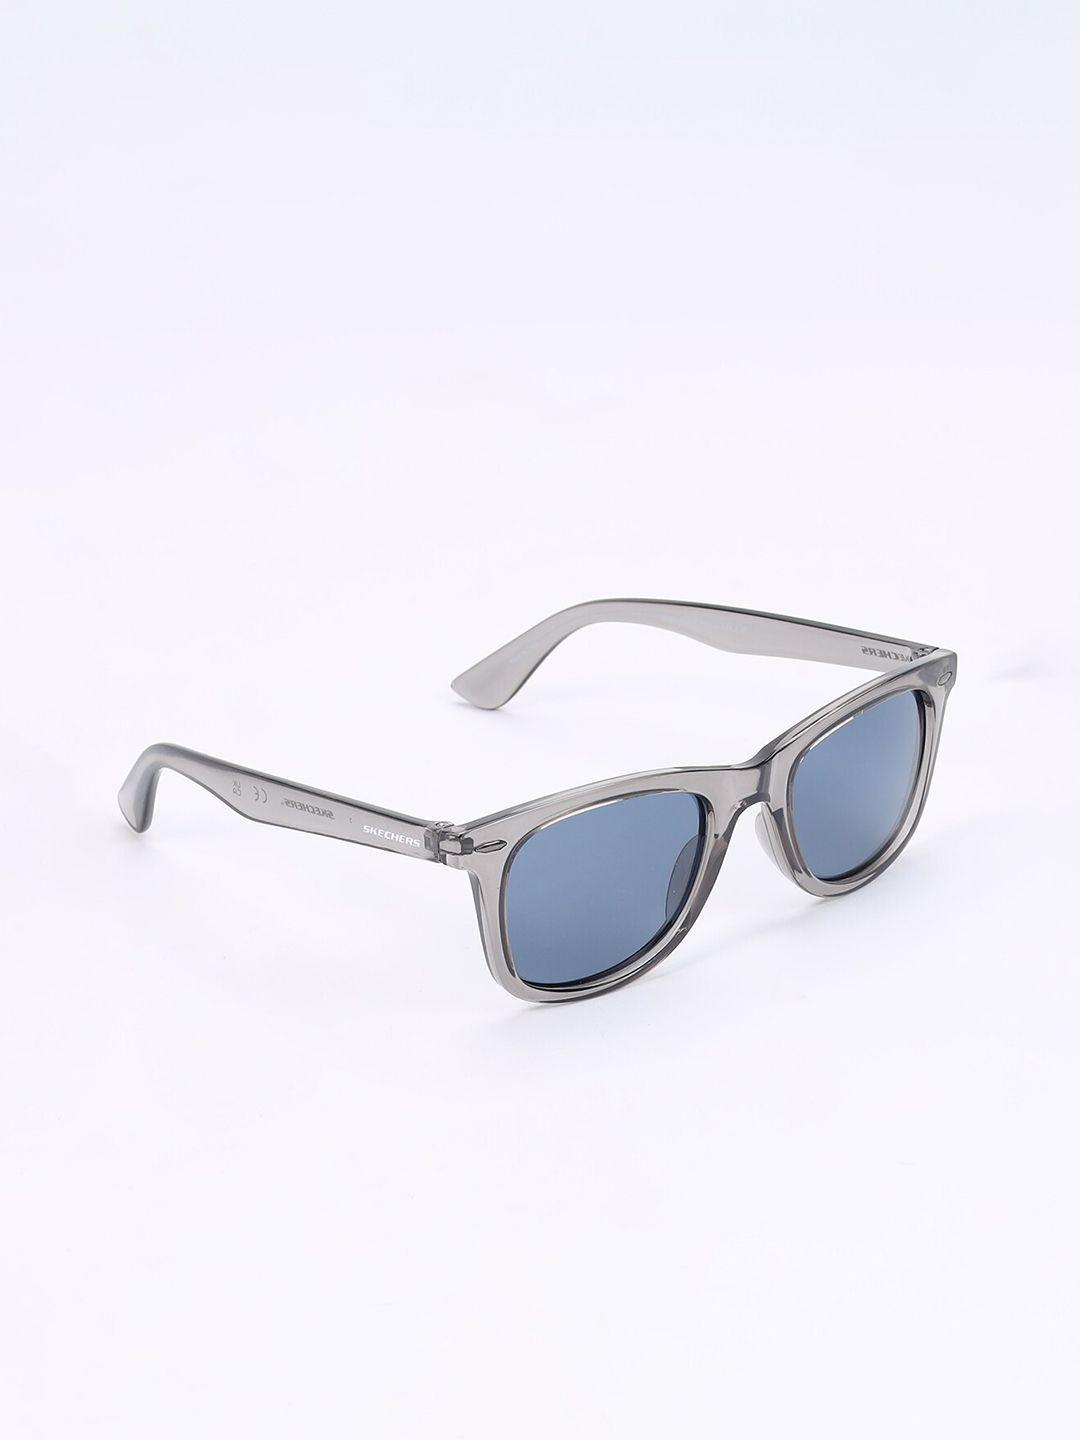 skechers-men-wayfarer-sunglasses-with-uv-protected-lens--se8097-51-20